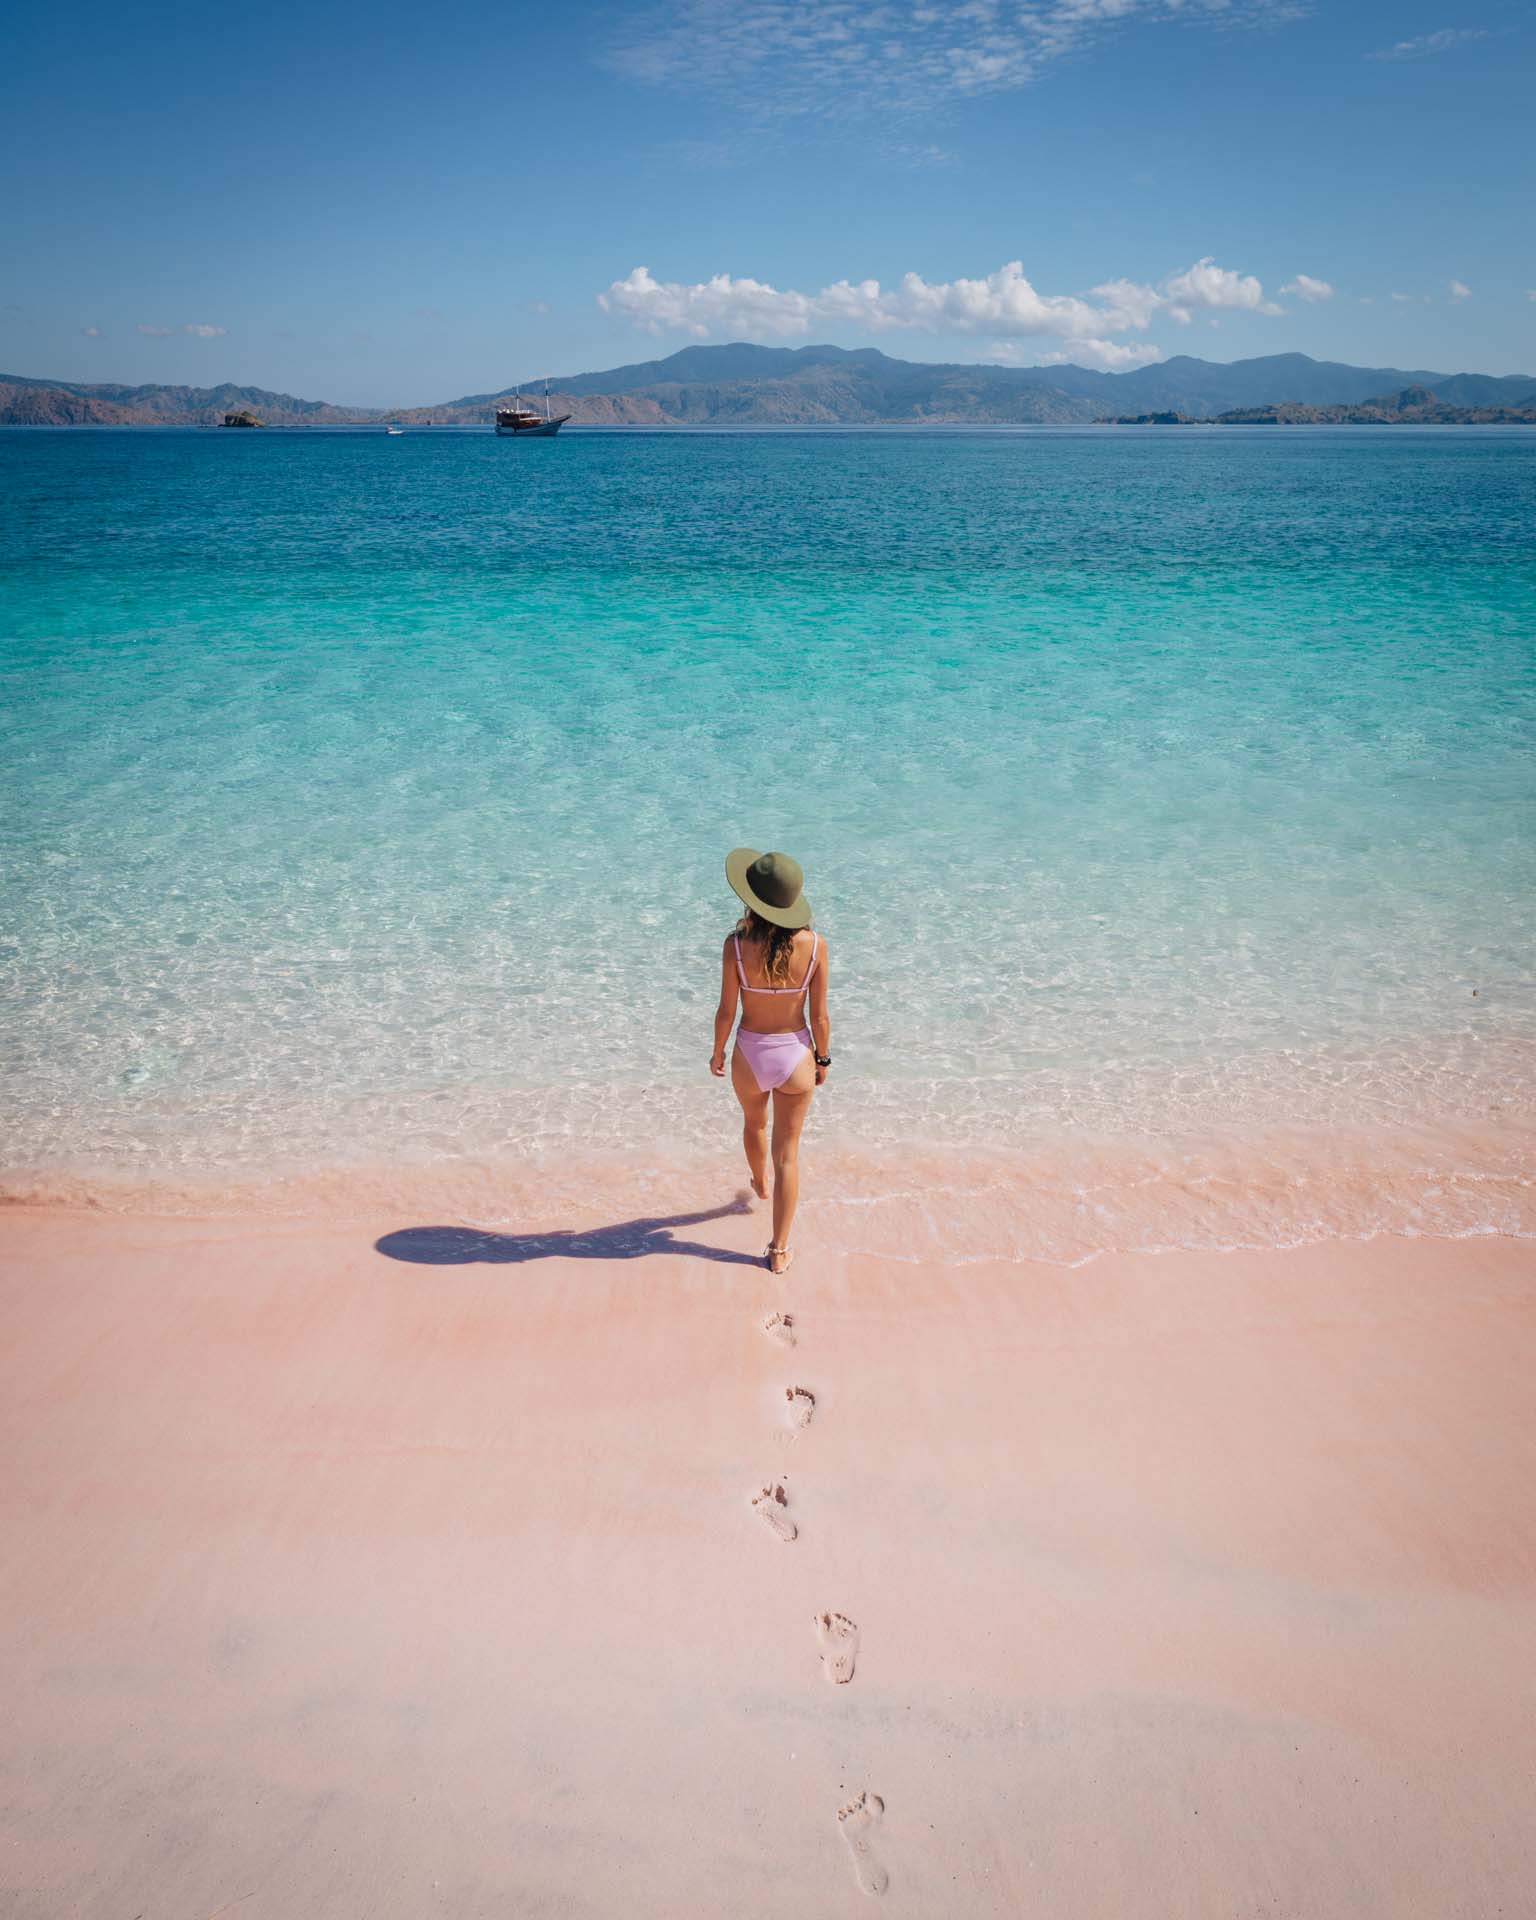 padar island, pulau padar, padar island indonesia, padar island hike, padar viewpoint, padar hike, padar island viewpoint, pink beach padar